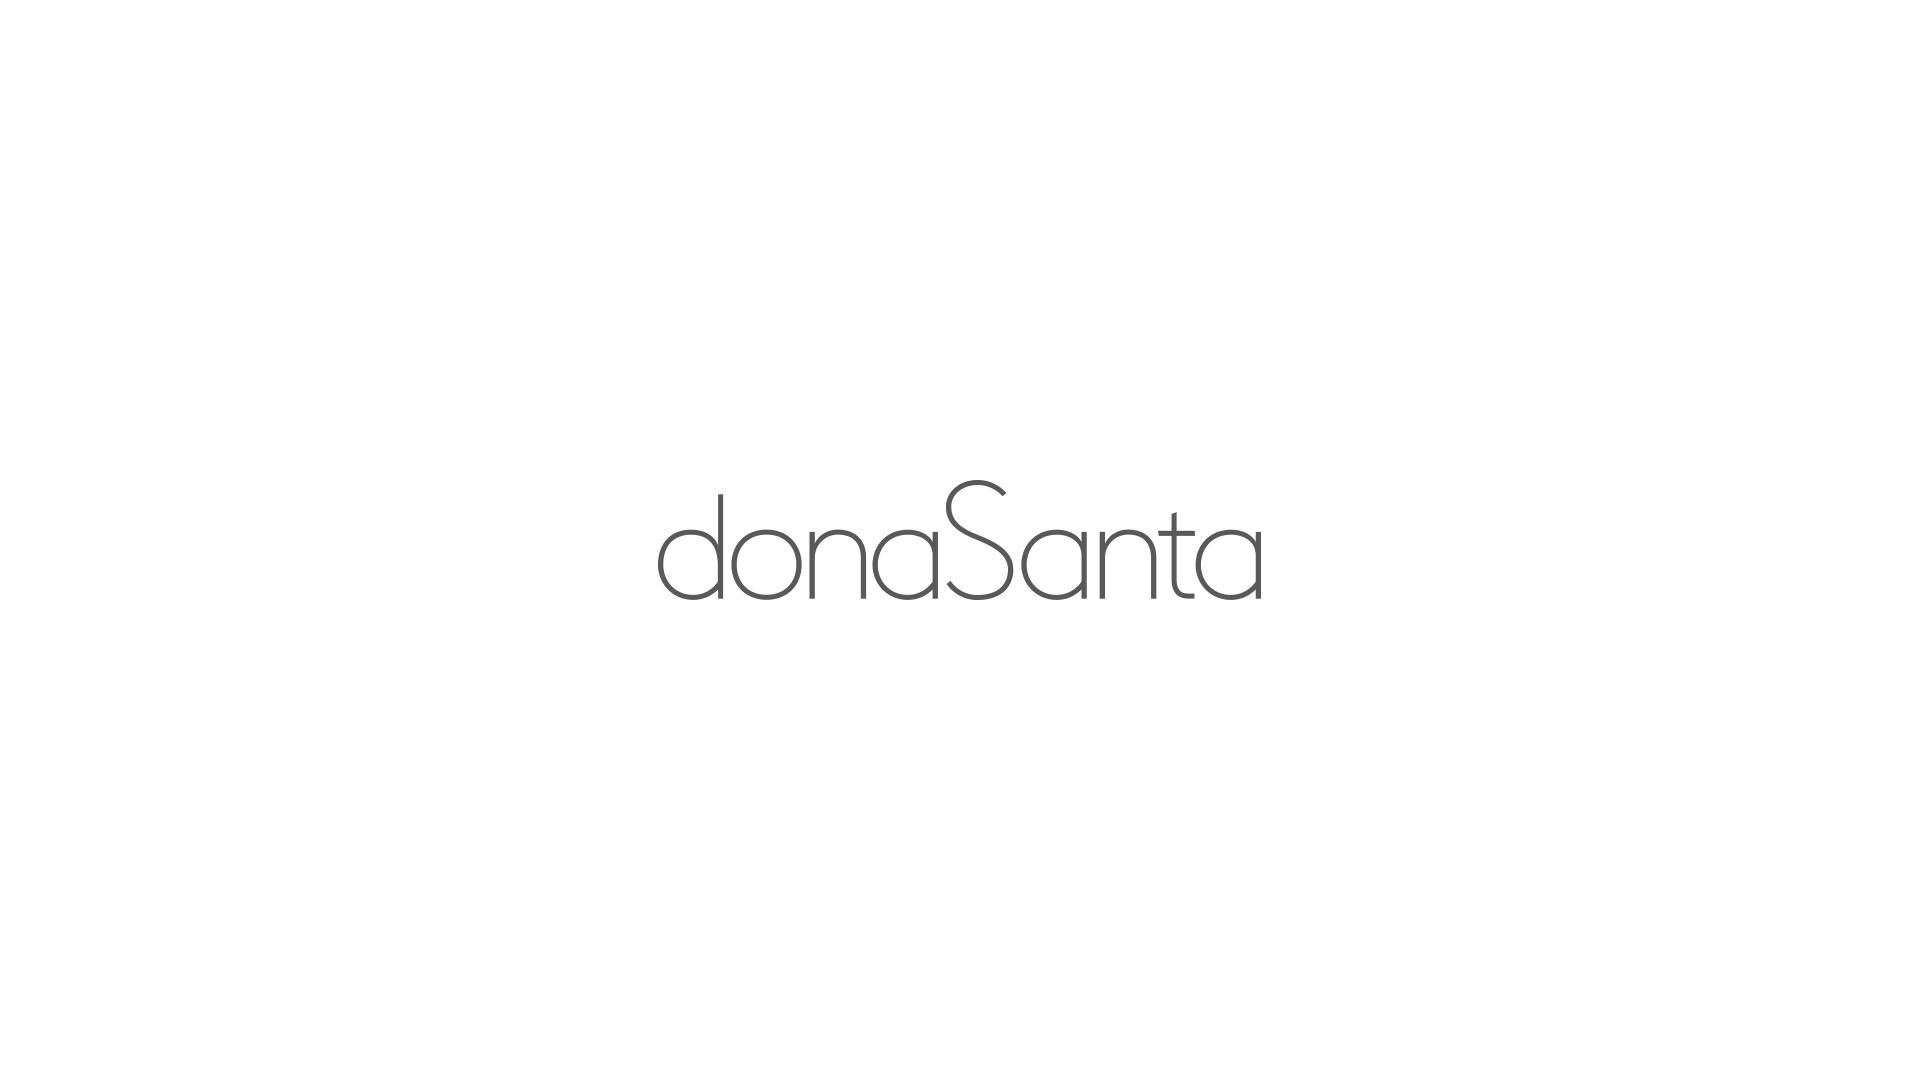 estudio-mola-dona-santa-003-logotipo.jpg